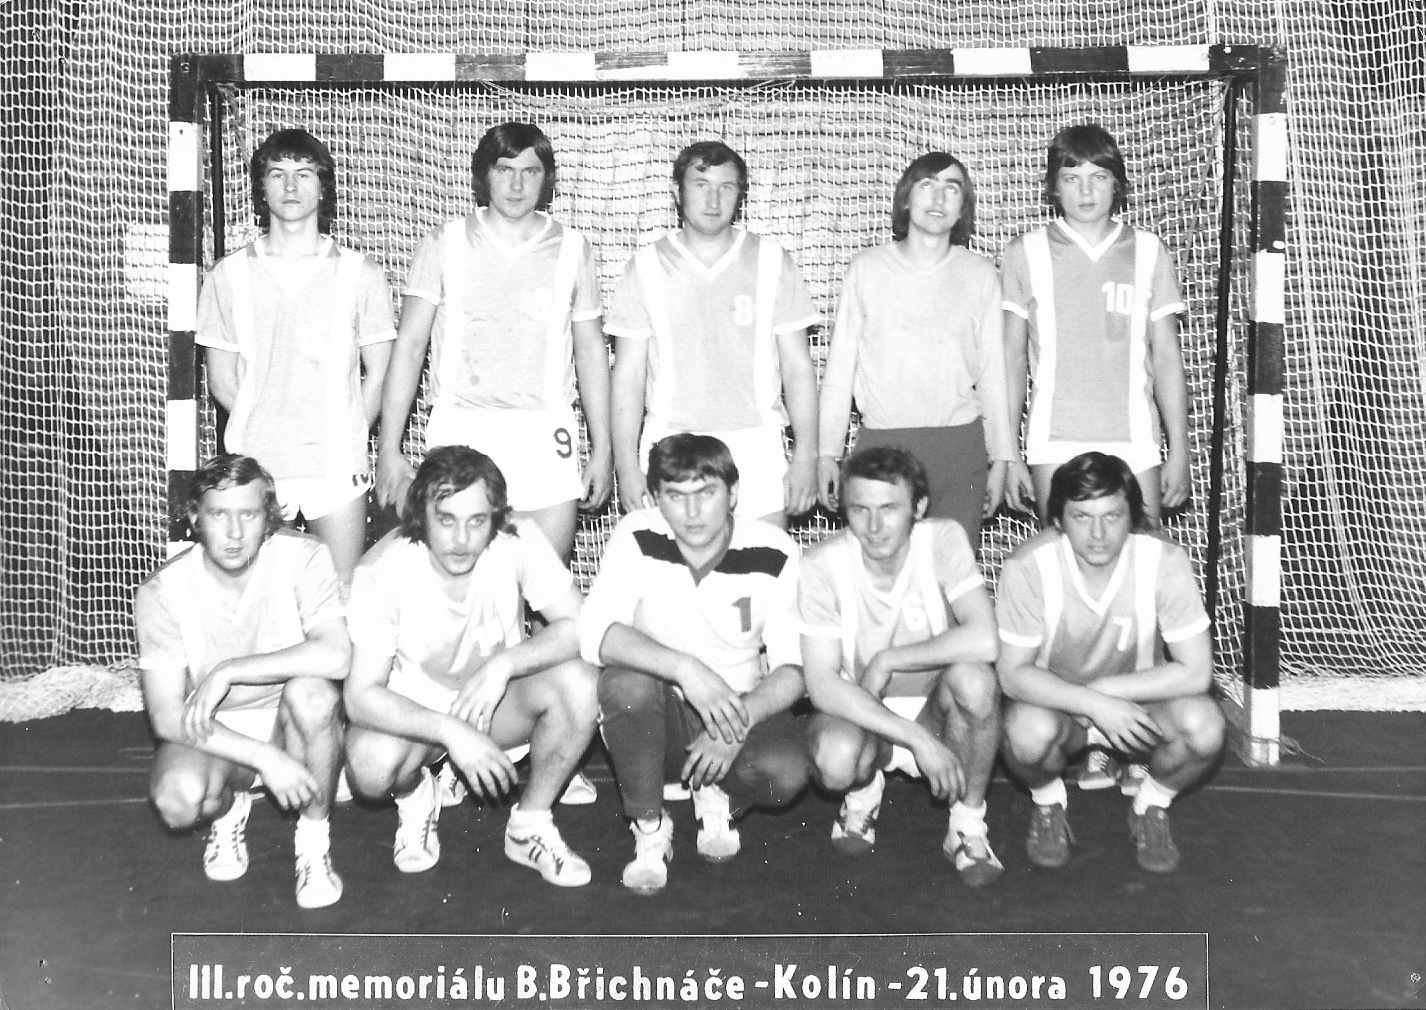 1976 turnaj mužů v Kolíně, horní zleva: Cehák, Křížek, Dušek, Paulus, Schneider. Dolní zleva: Šanda, Štěpánek, Švec, Cibulka, J.Urban